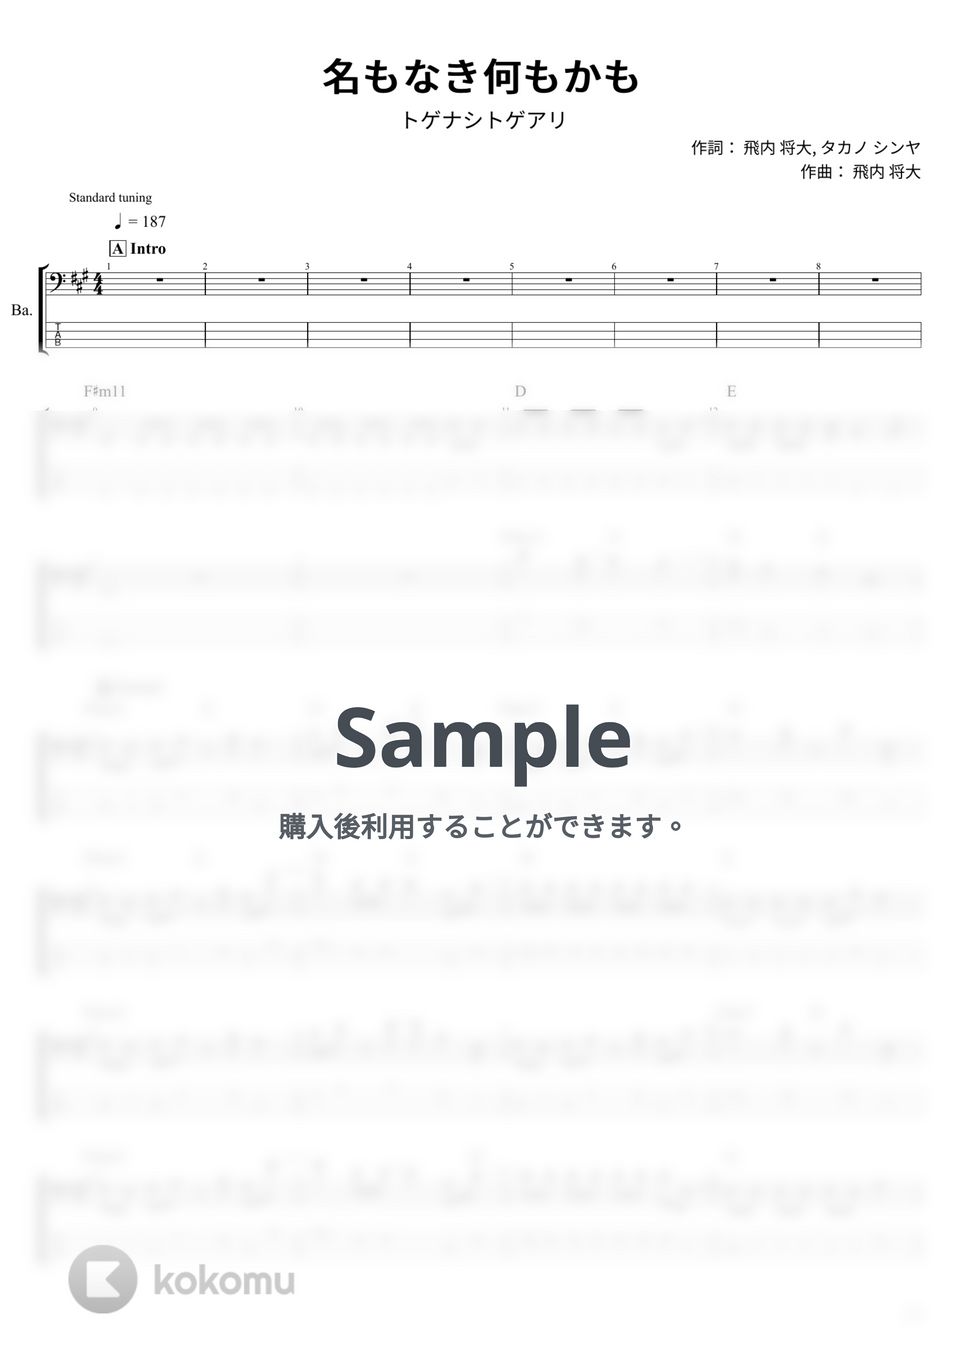 トゲナシトゲアリ - 名もなき何もかも (ベース Tab譜 4弦) by T's bass score